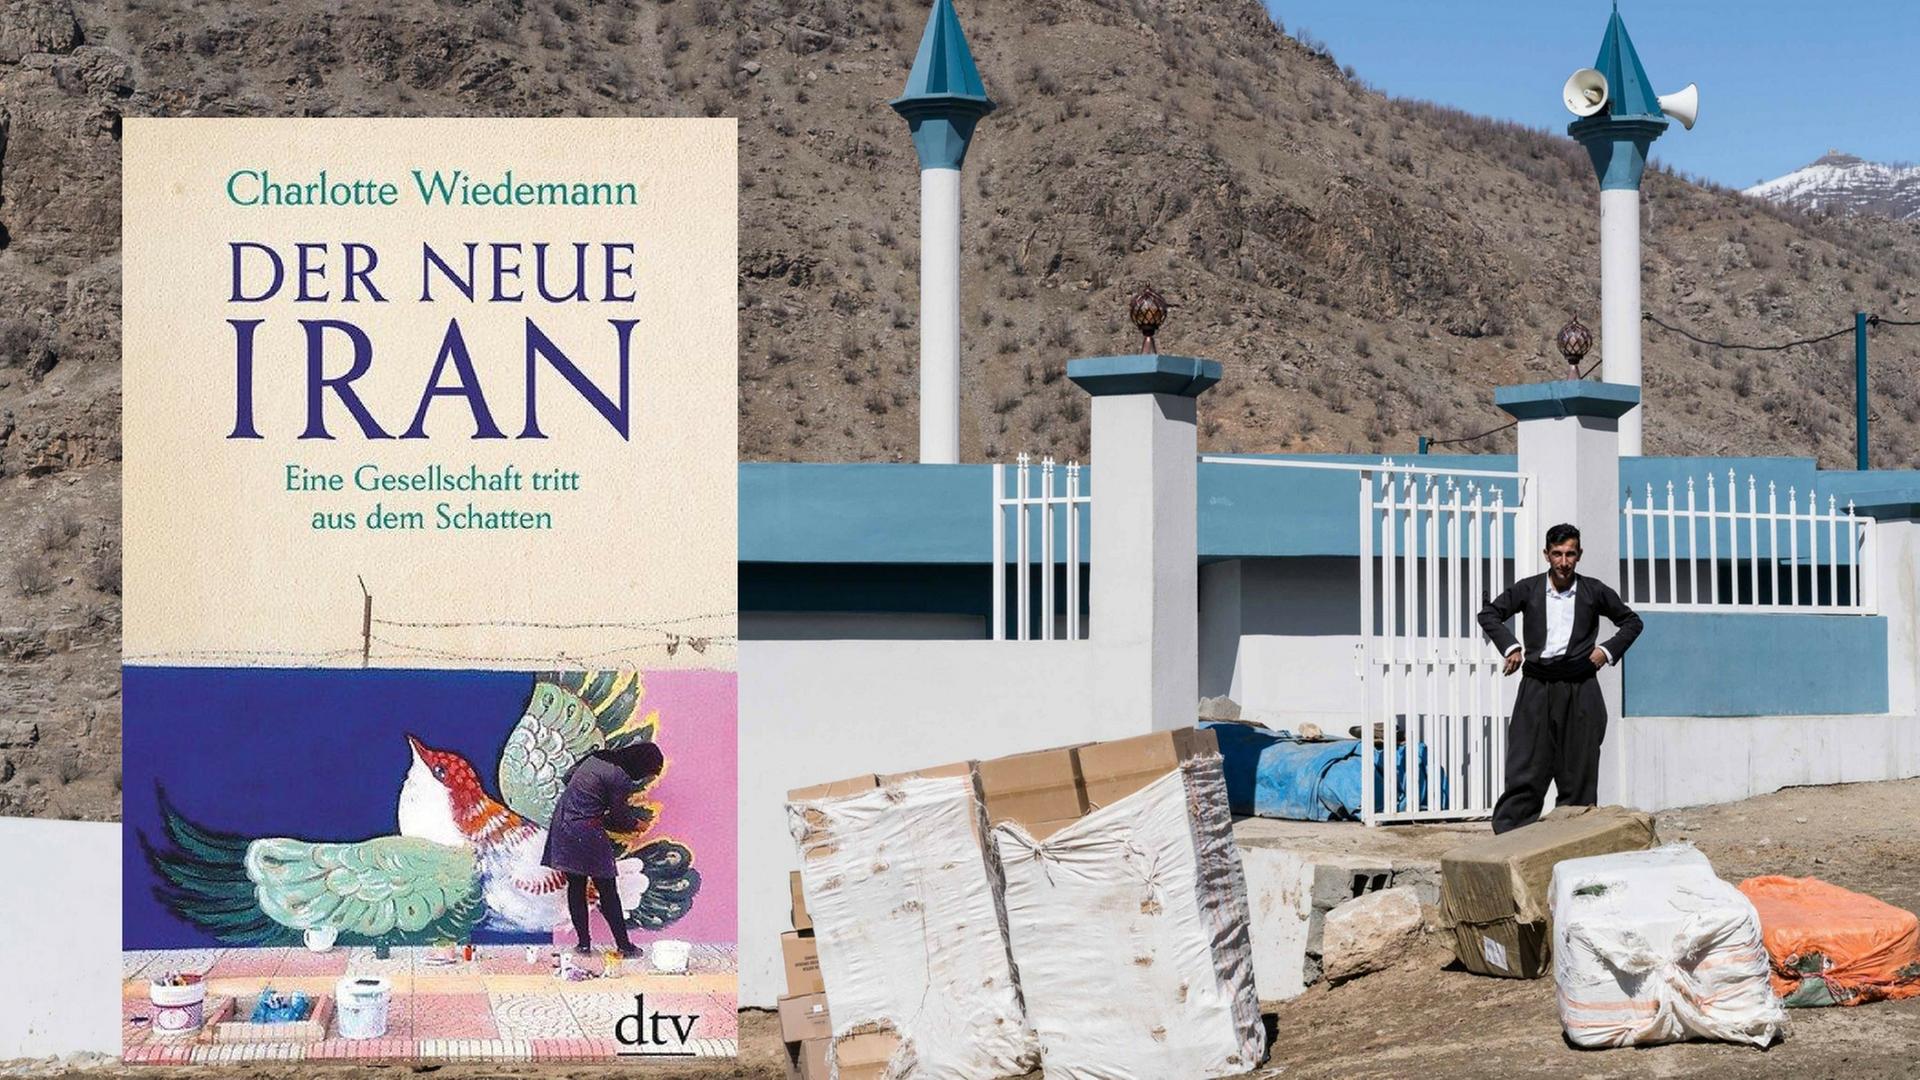 Buch "Der neue Iran" vor dem Hintergrund einer Baustelle in einem Bergdorf im Iran